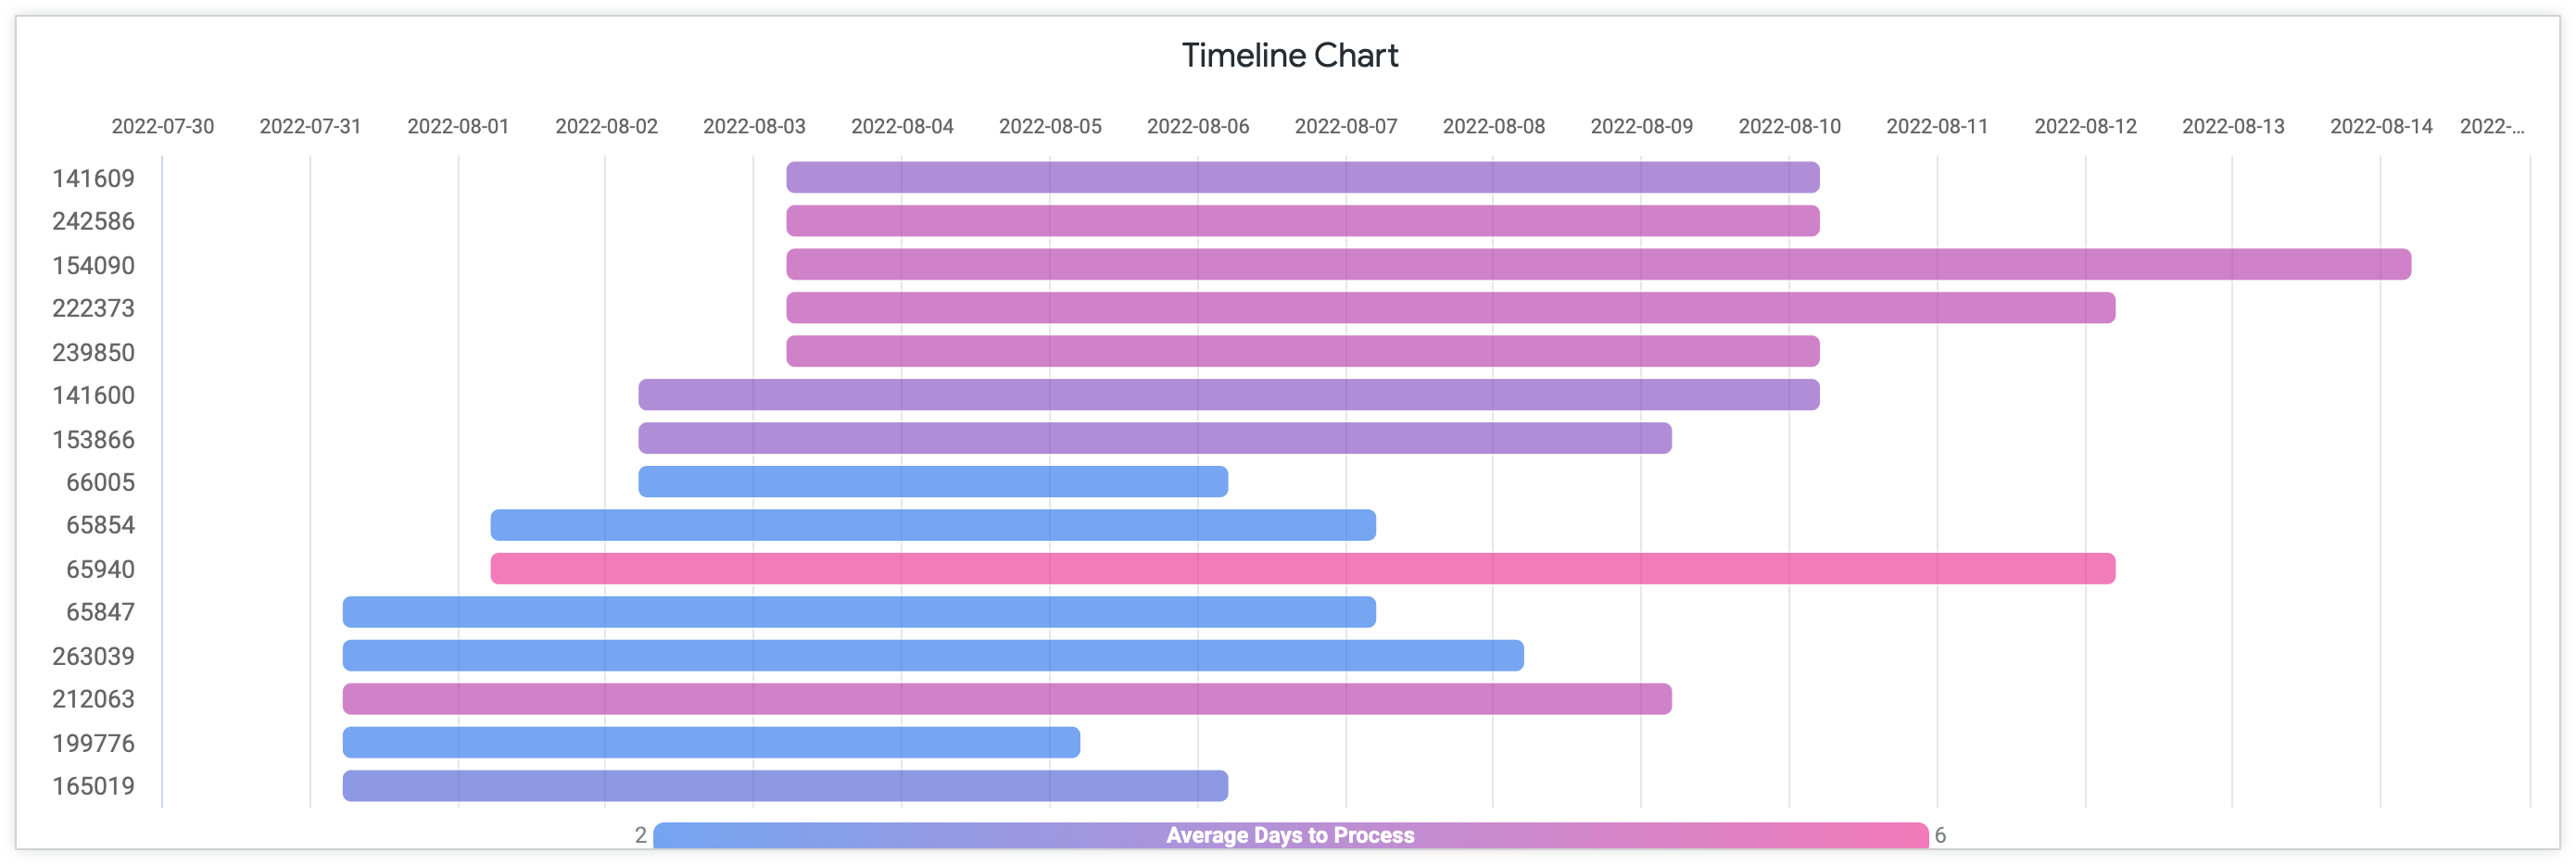 Gráfico de cronograma que muestra el promedio de días de procesamiento con el ID de pedido en el eje Y y los días desde julio hasta agosto de 2022 en el eje X.